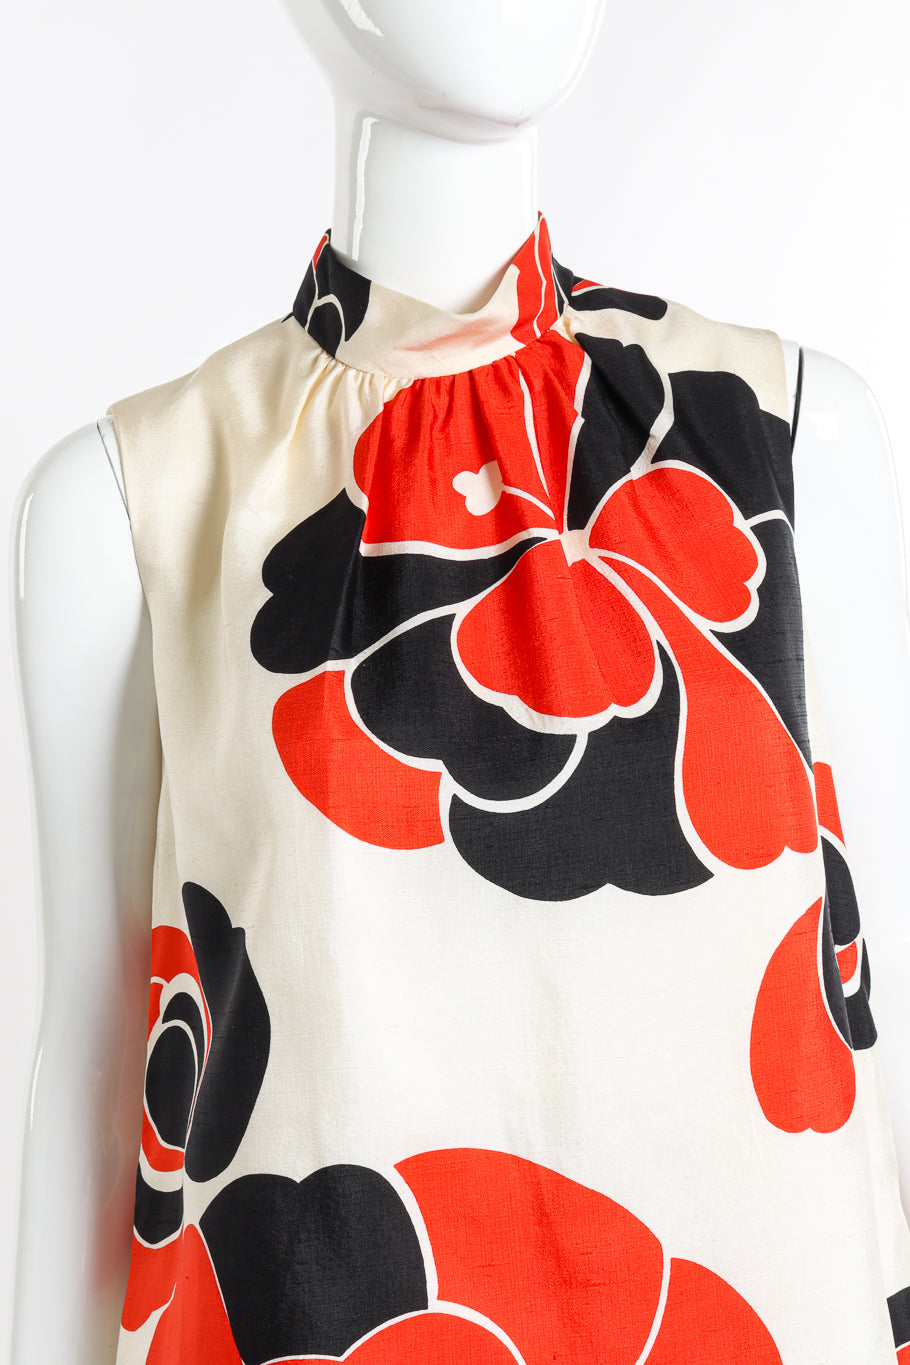 Vintage Charles Cooper Mod Flower Blouse, Pant & Sash Set front on mannequin closeup @recess la